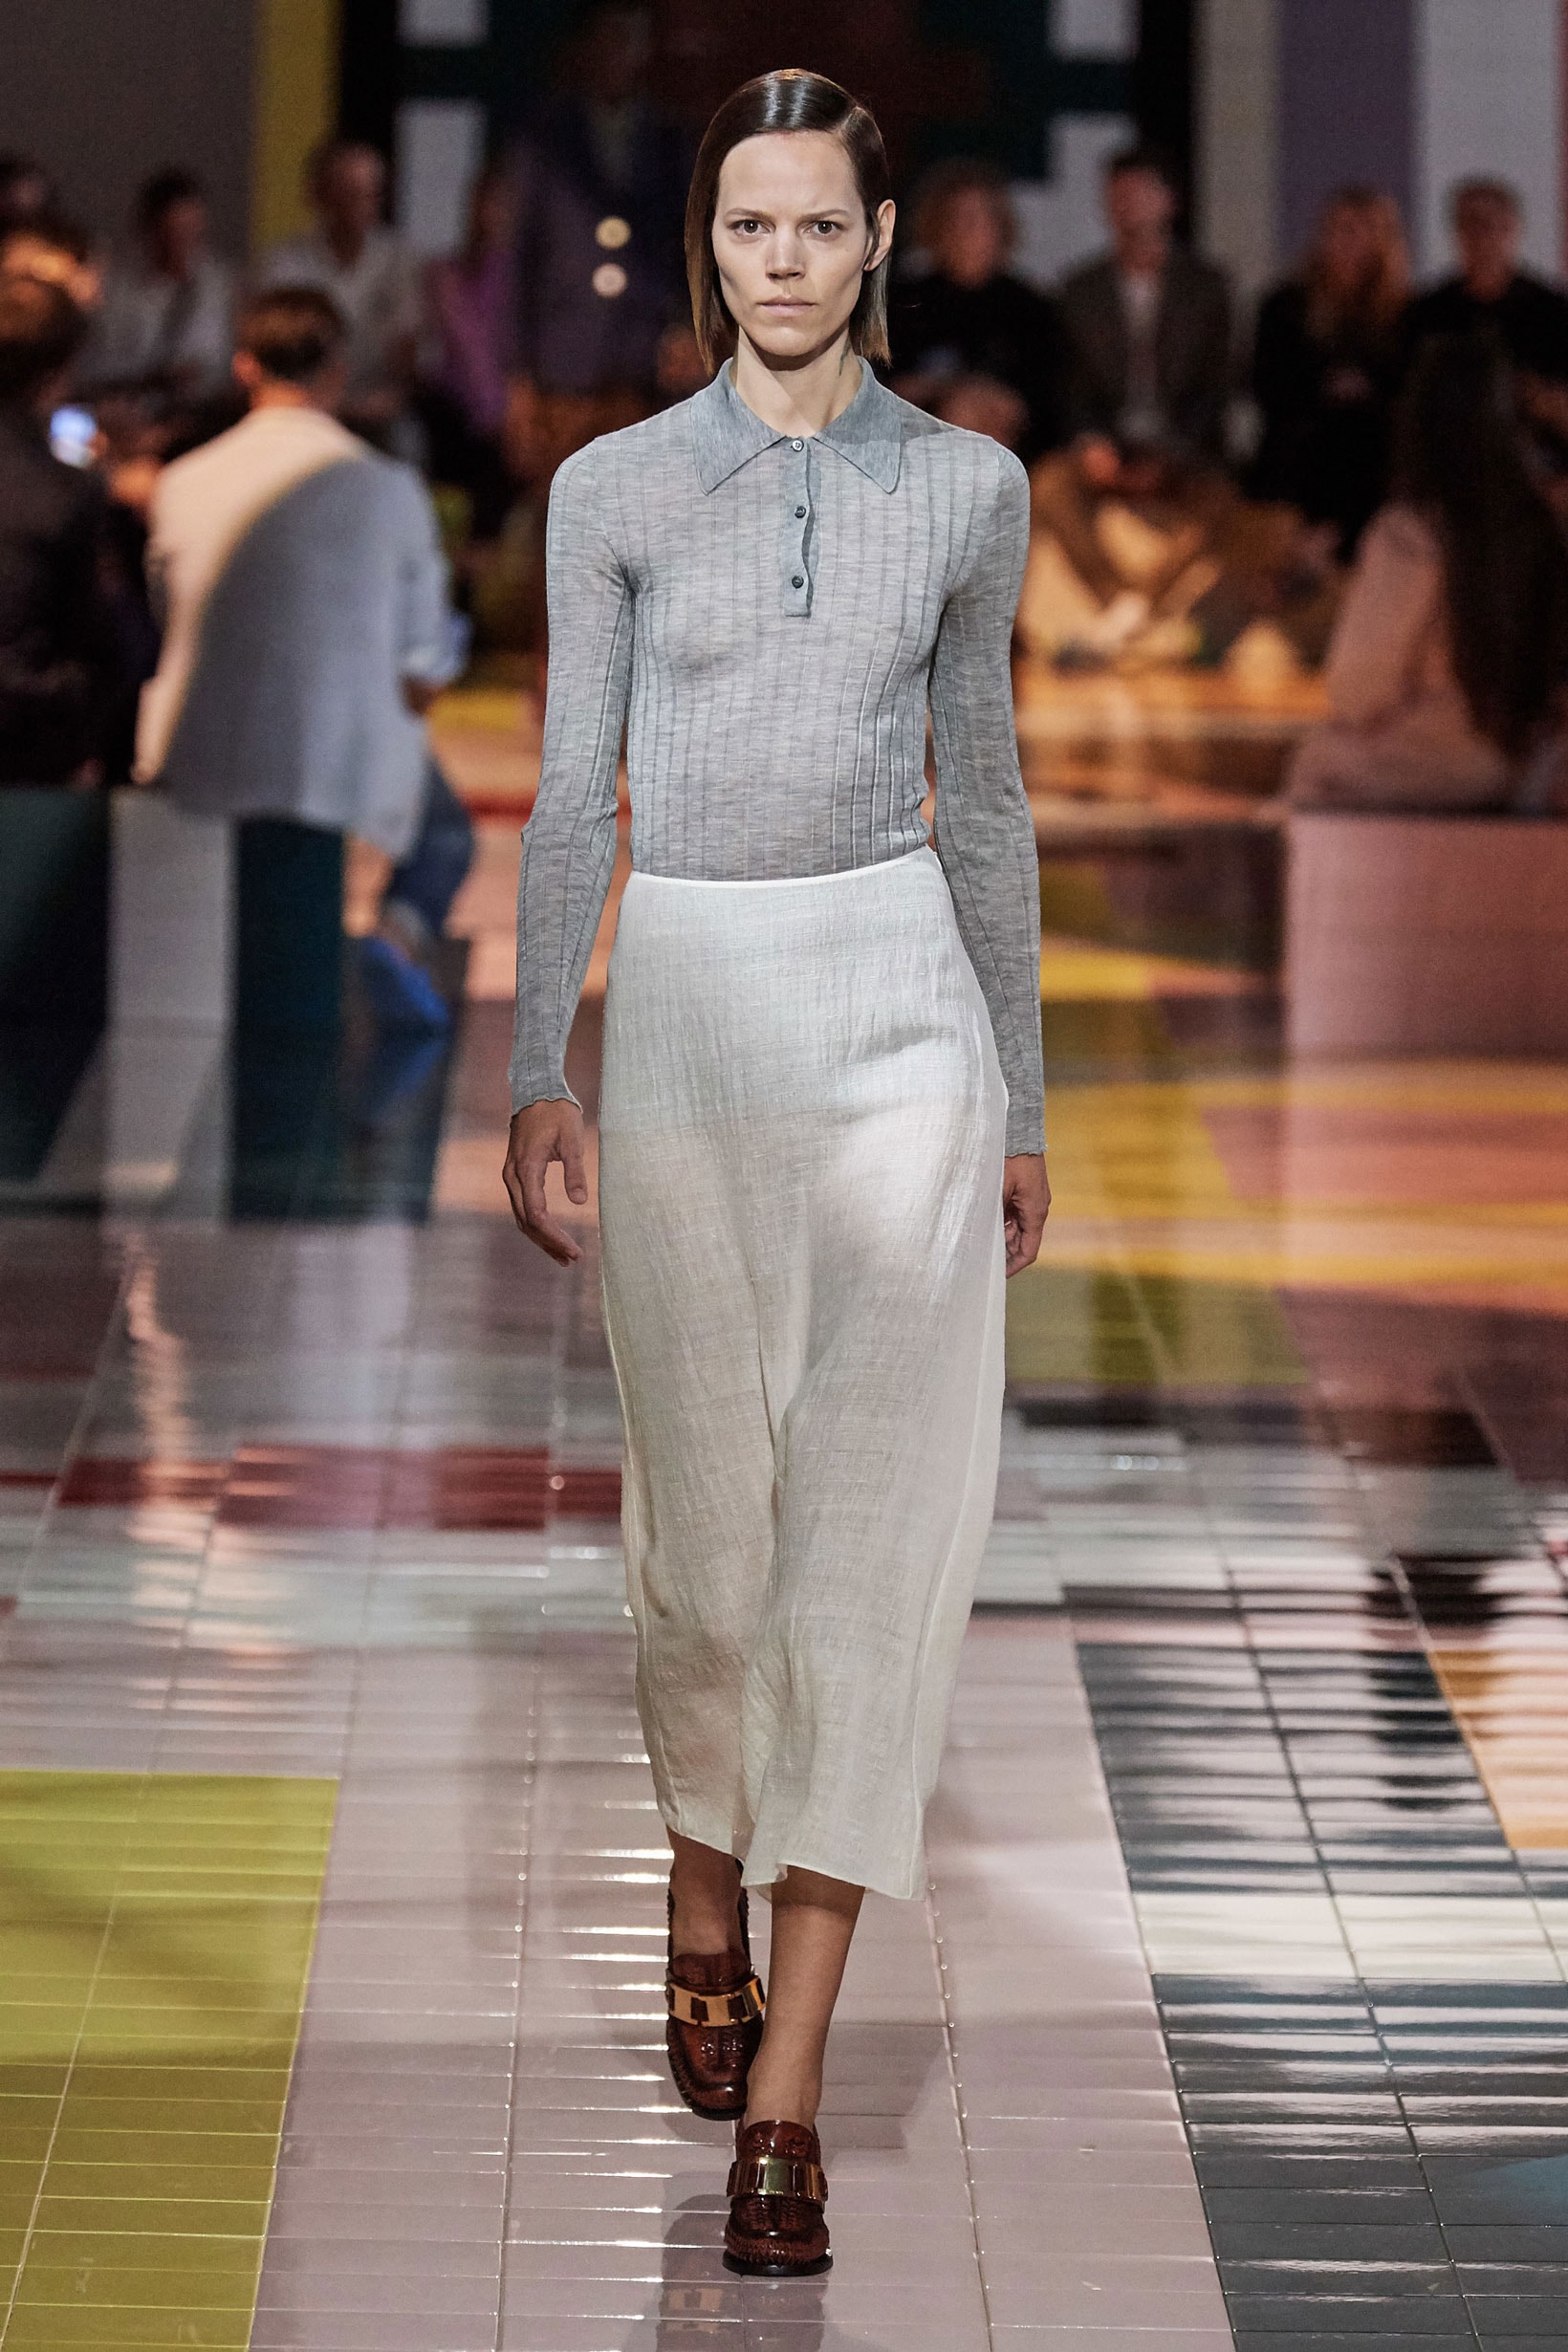 Prada Spring Summer 2020 Collection Milan Fashion Week Shirt Grey Skirt Tan